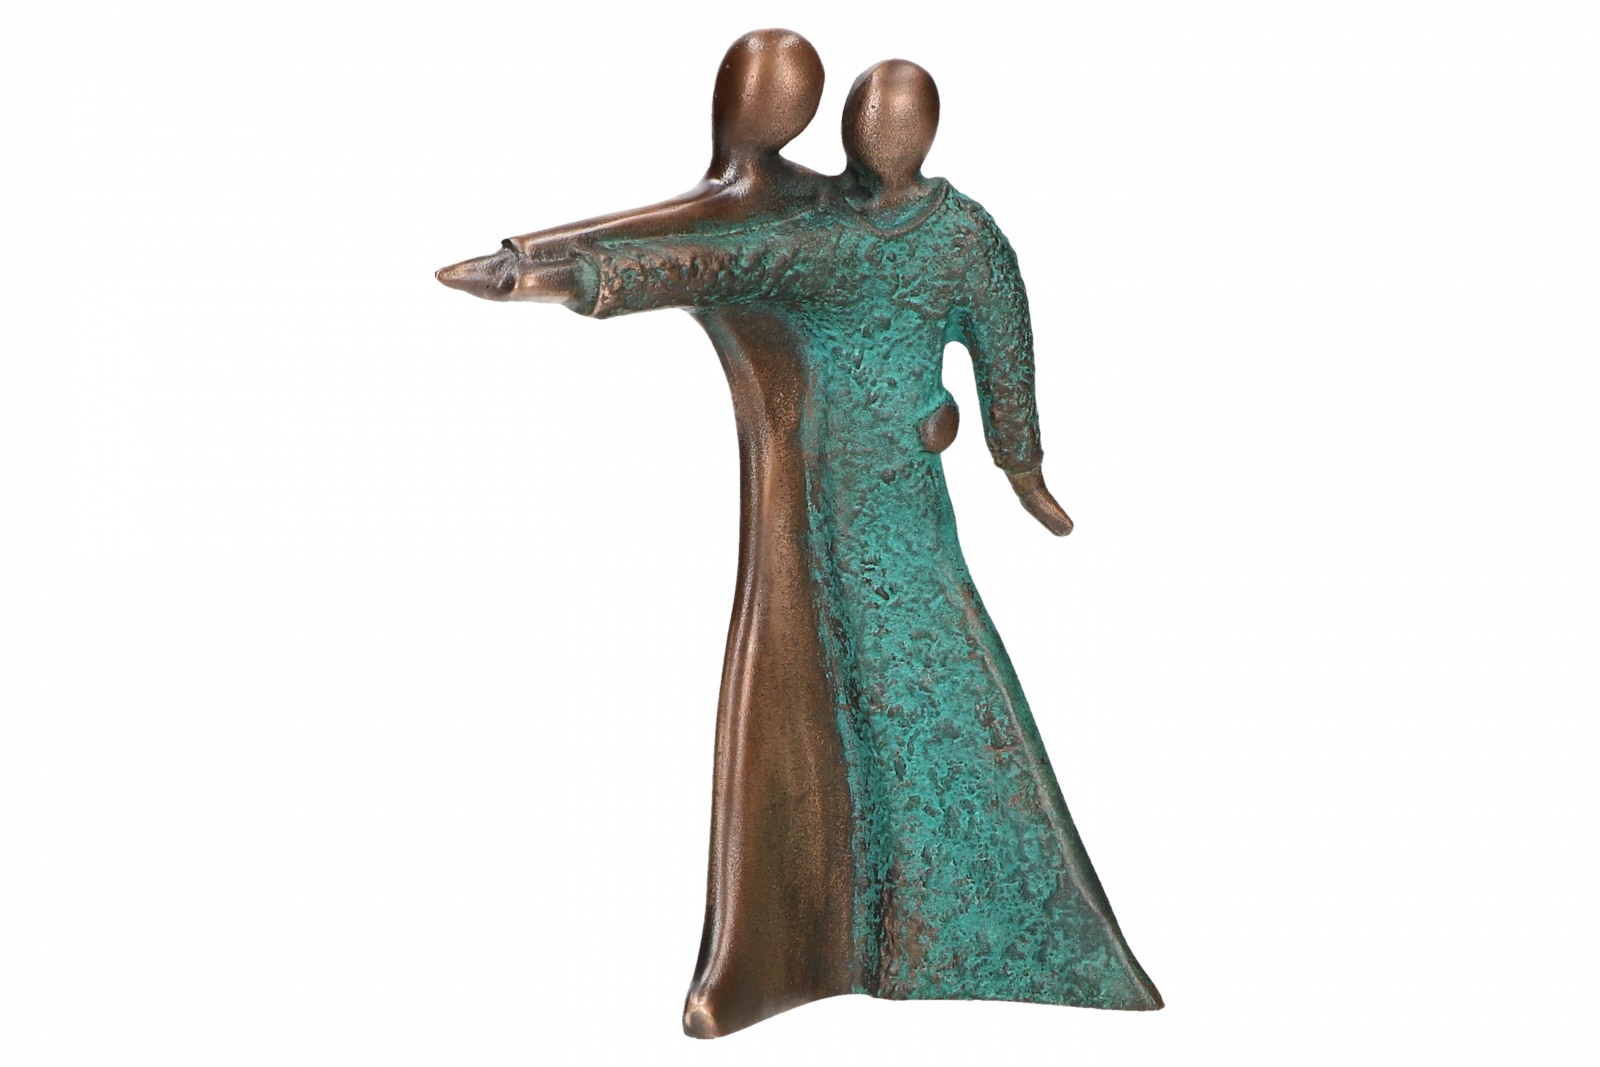 Bronzen Paar - dansend